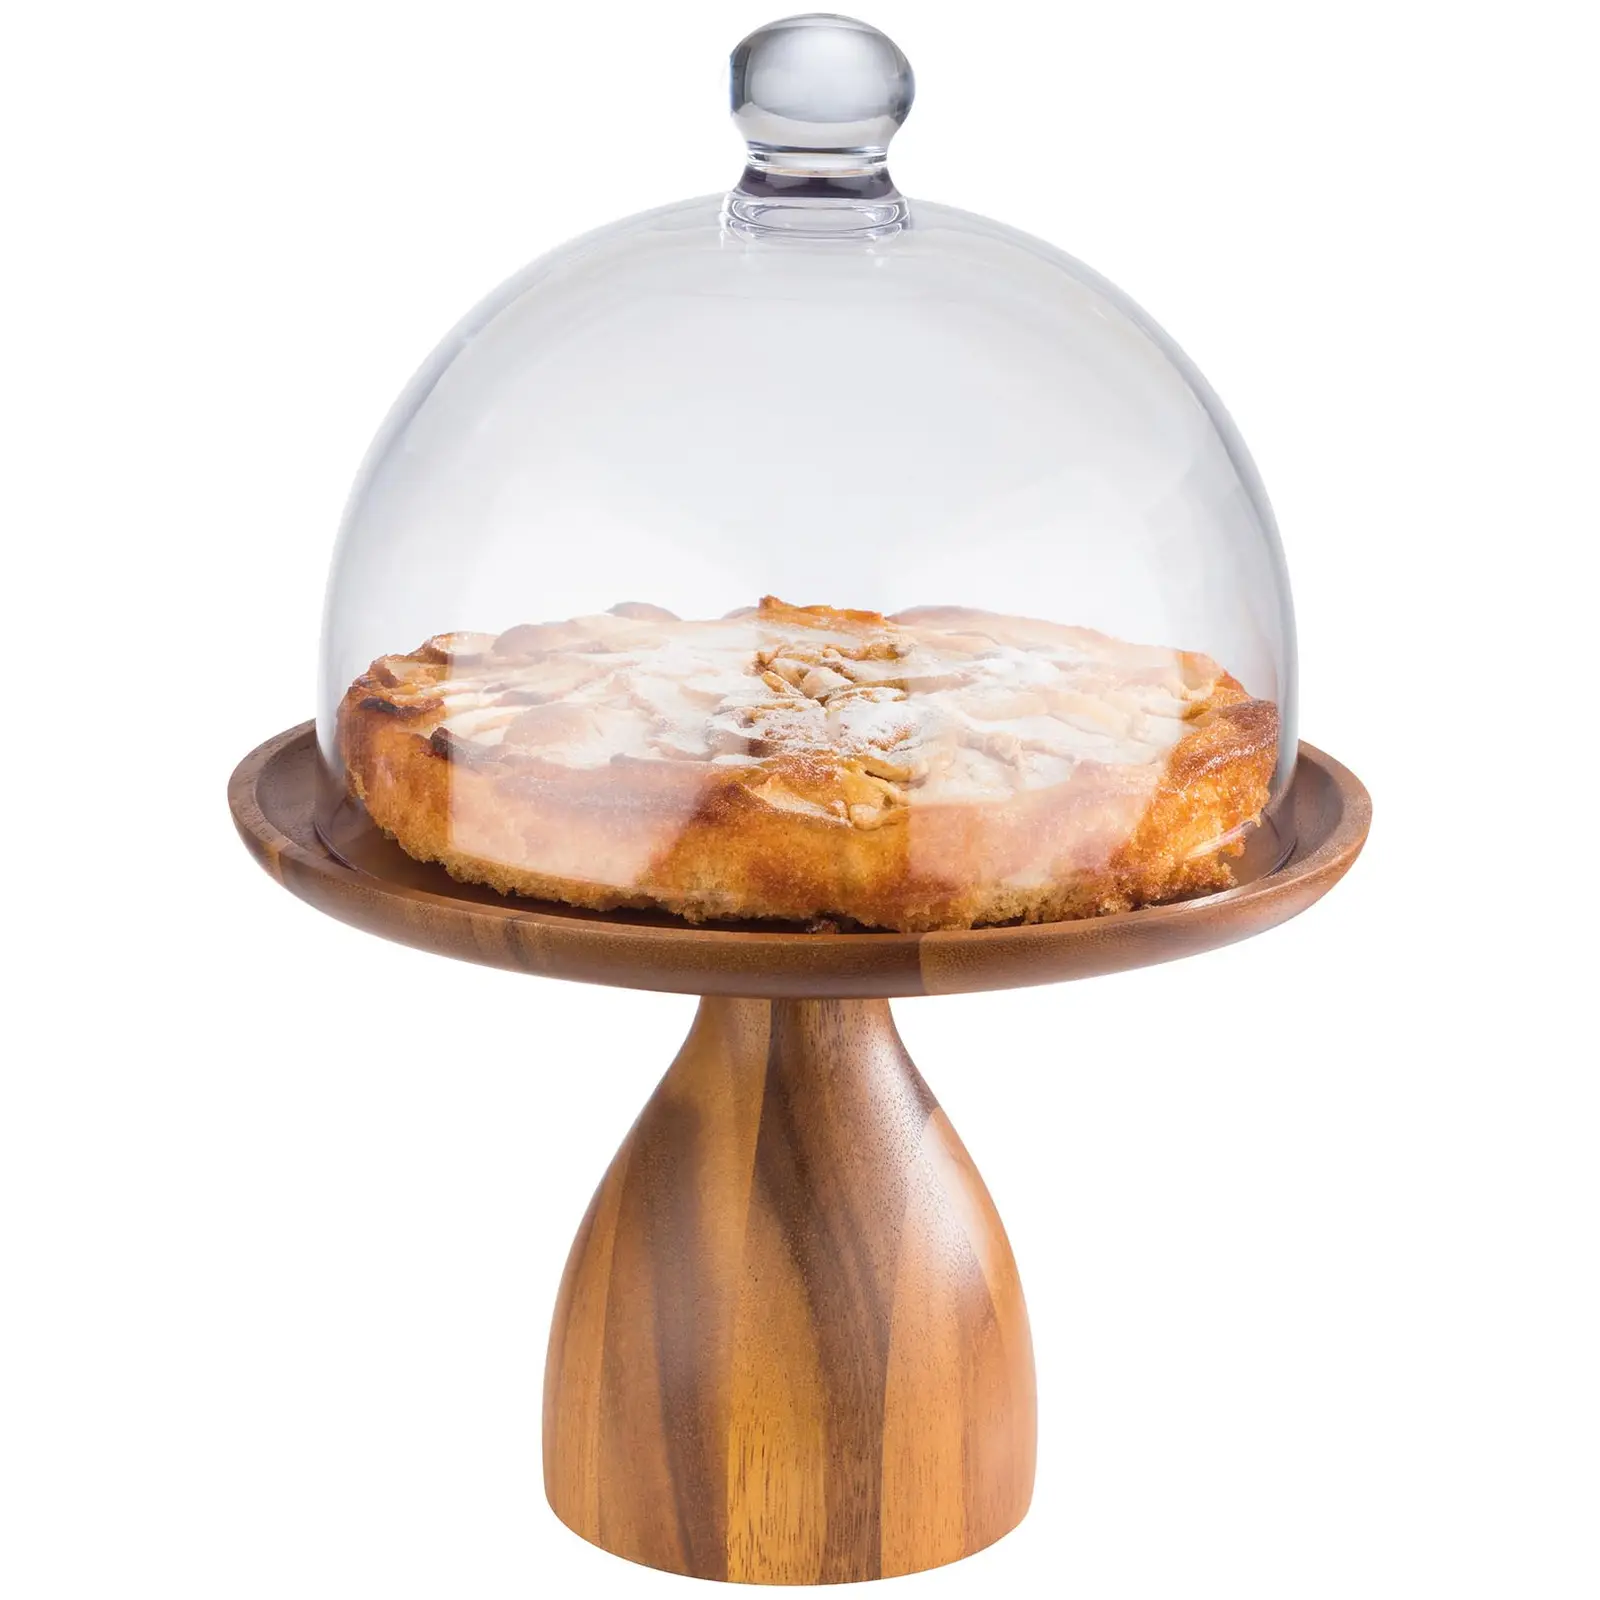 Base para tartas - Madera de acacia aceitada - diámetro: 24 cm - altura: 16 cm